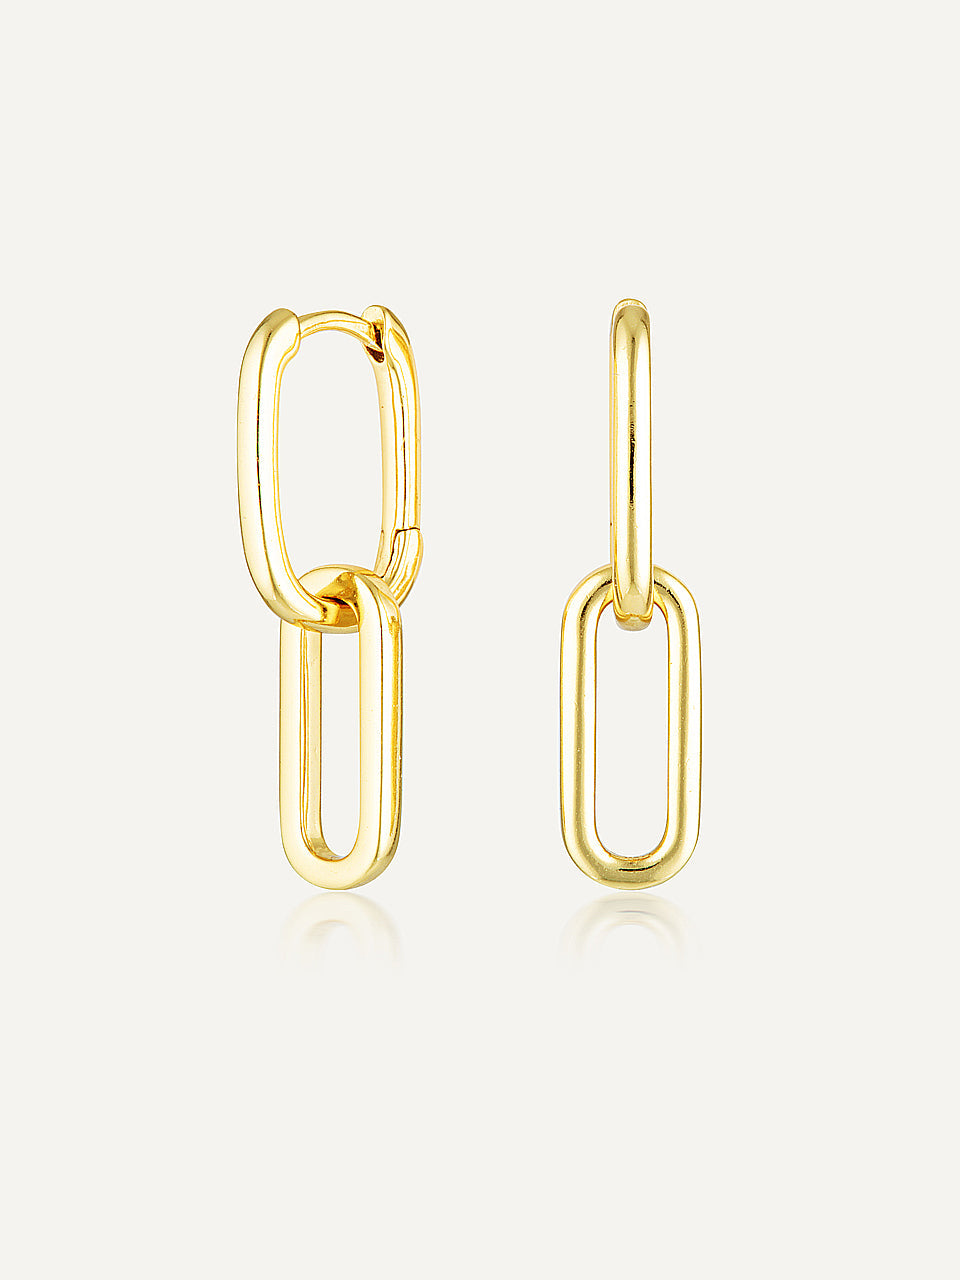 Celine Earrings Gold | Avant Studio